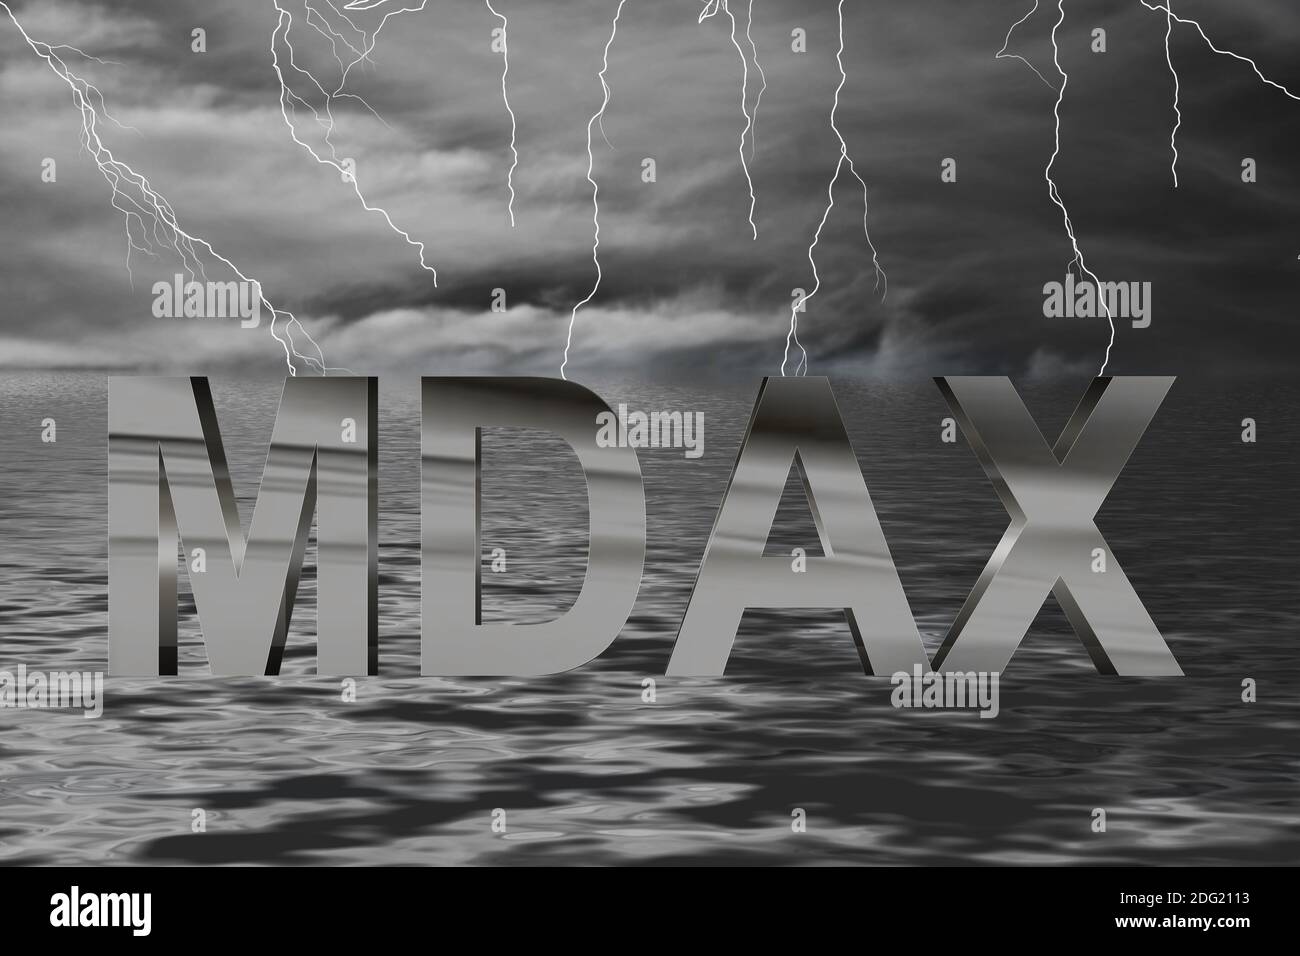 Börse Ozean Gewitter mit Blitzen und Schriftzug MDAX in Chrom Foto de stock